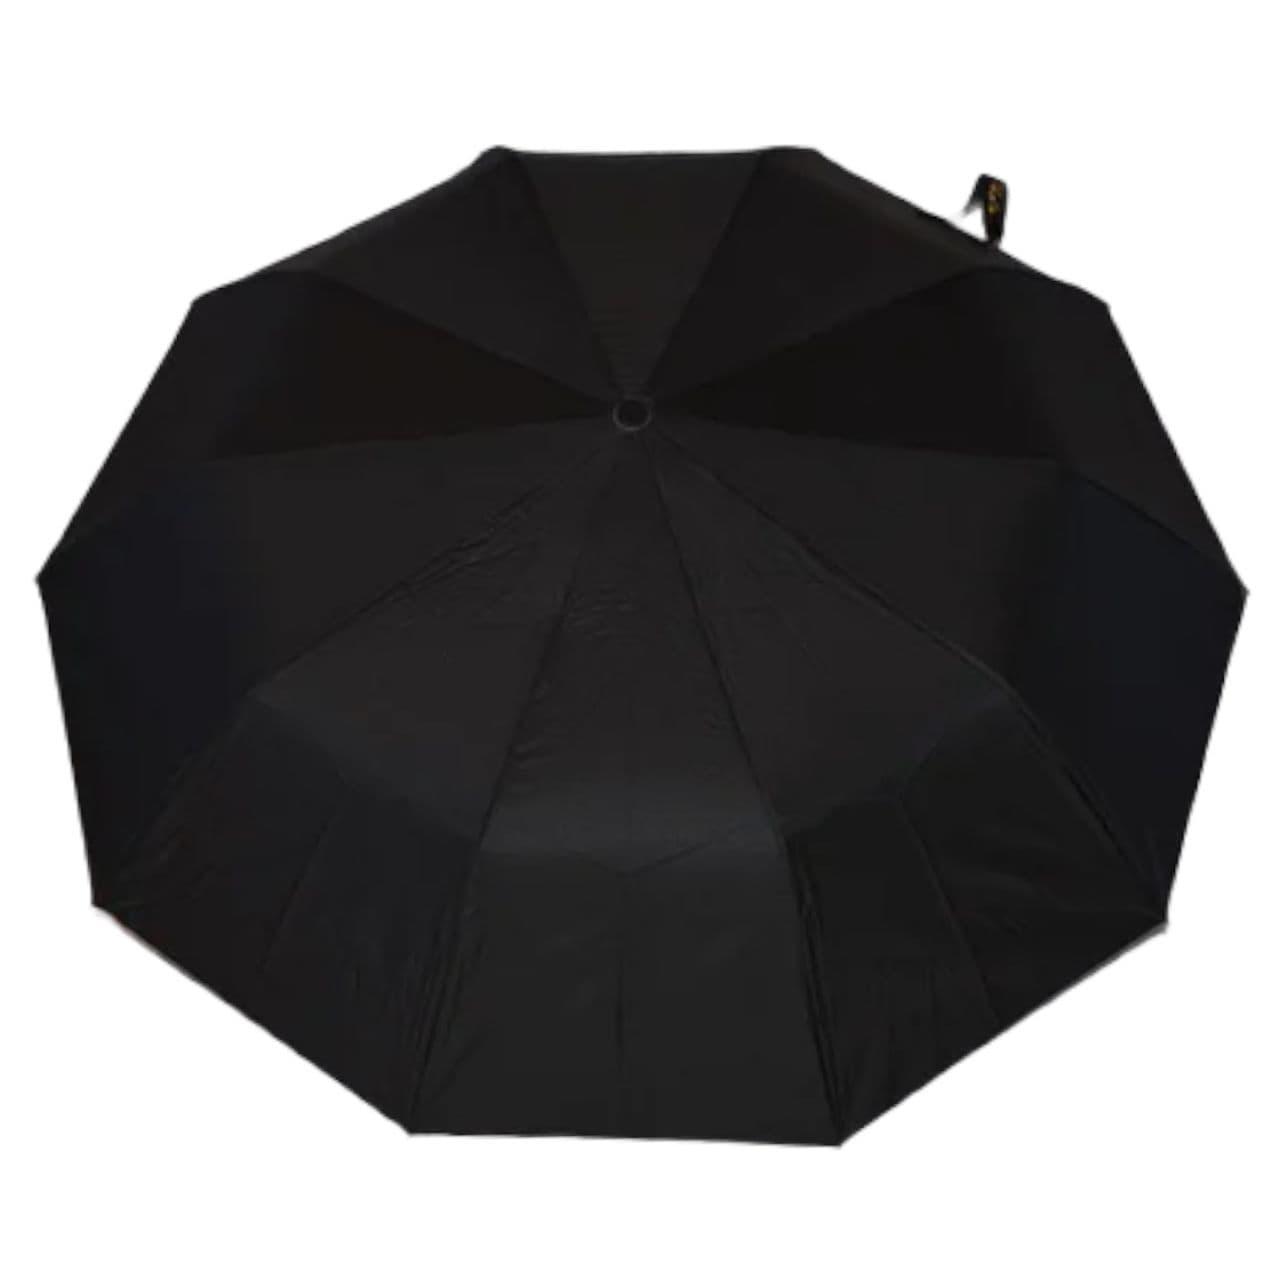 Мужской складной зонтик полуавтомат Bellissima 100 см черный - фото 4